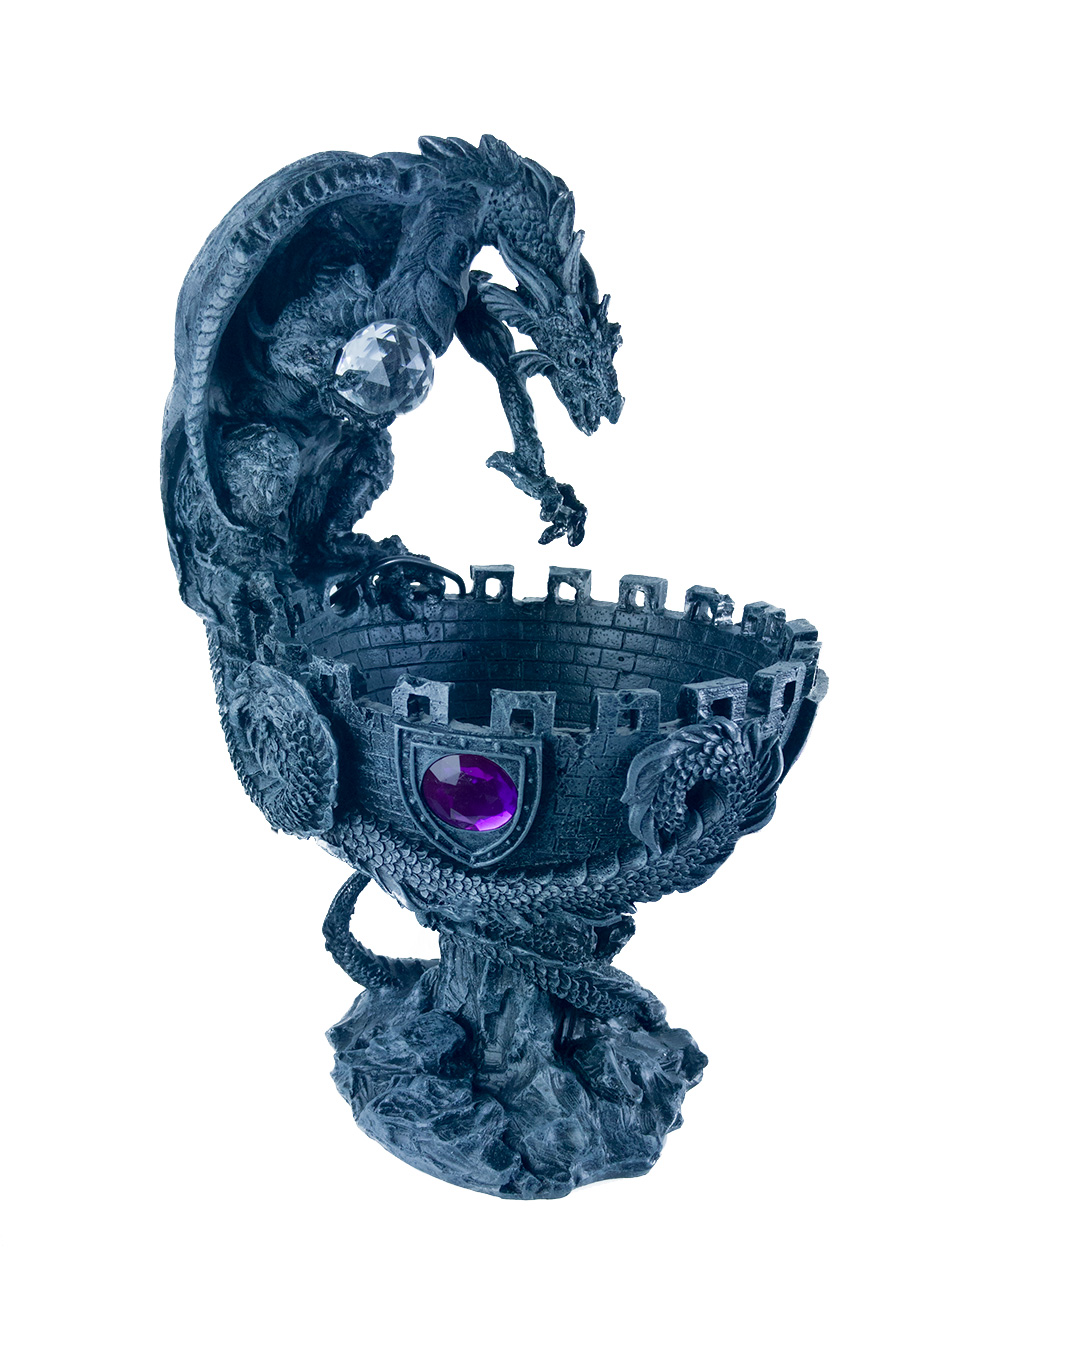 Deko Figur Steampunk Halloween Gothic Dekoration Drachenfigur Fantasy Dragon Art 